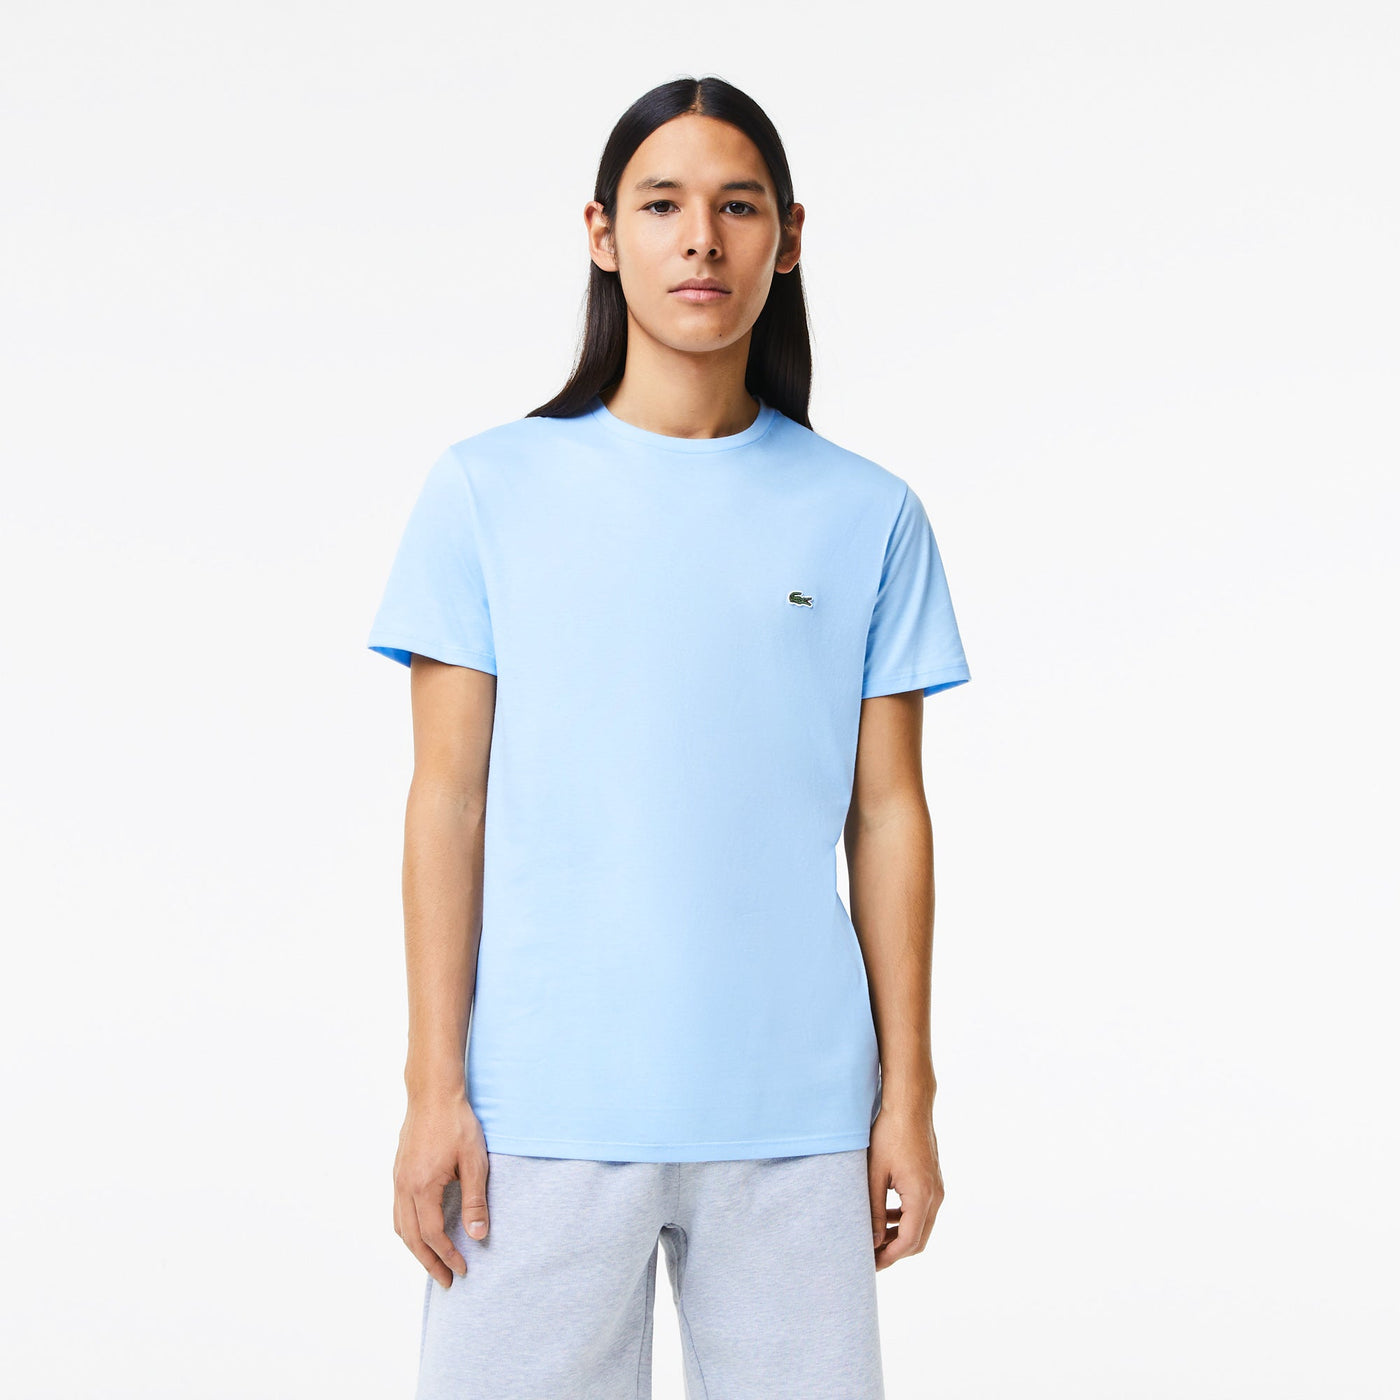 Lacoste T-shirt Bleu ciel pima uni - Lothaire